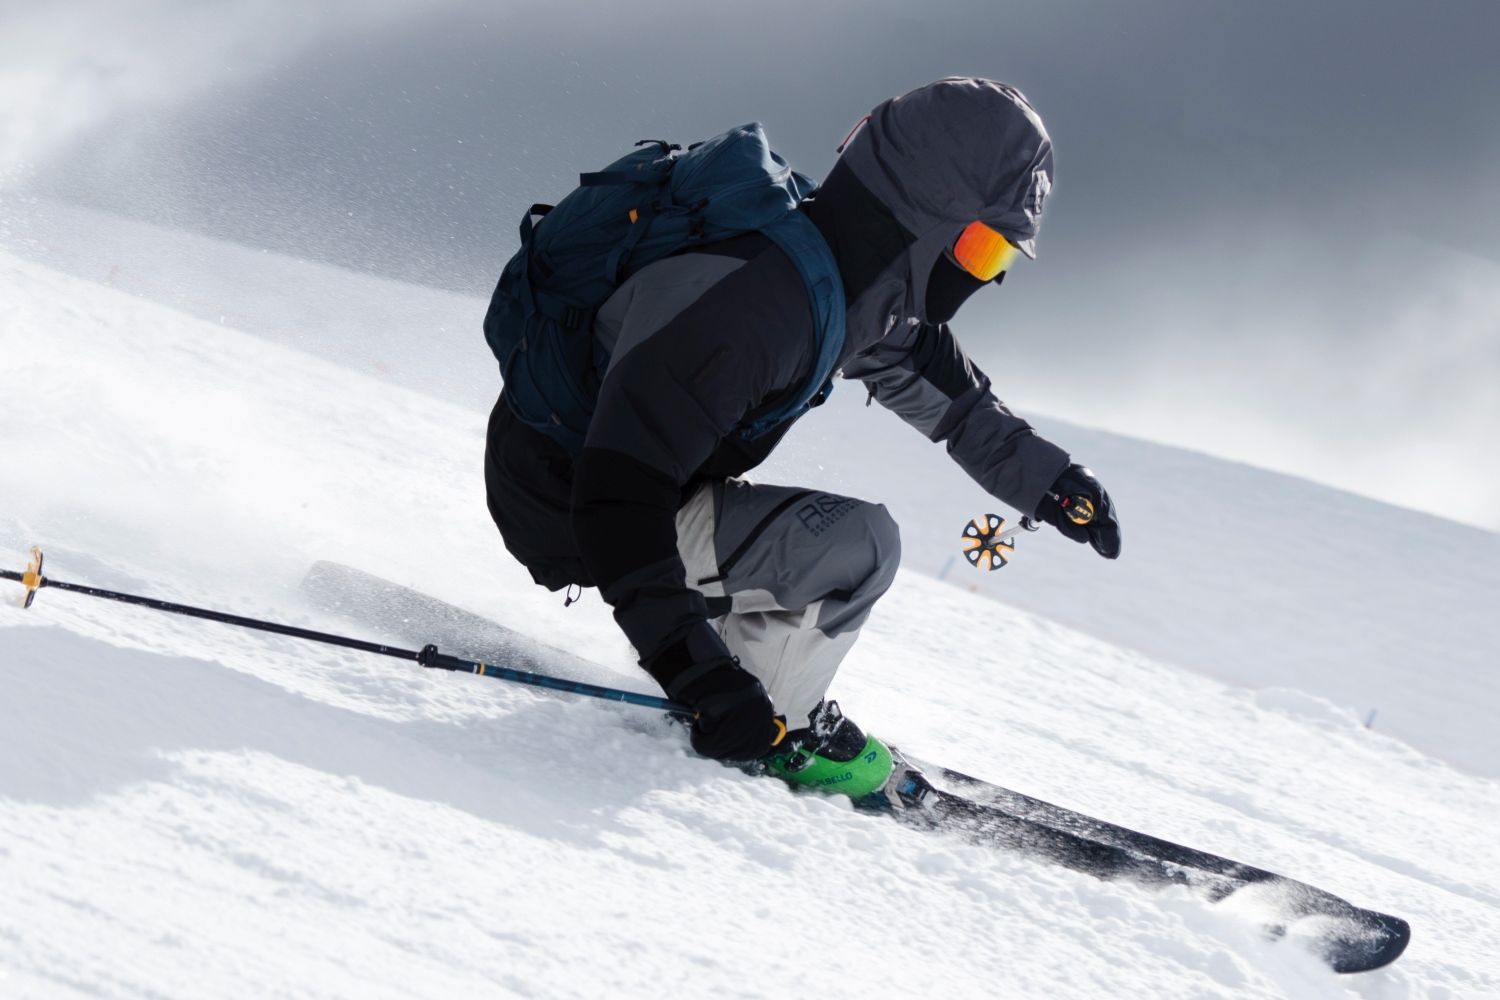 Man skiing down slope wearing full ski gear